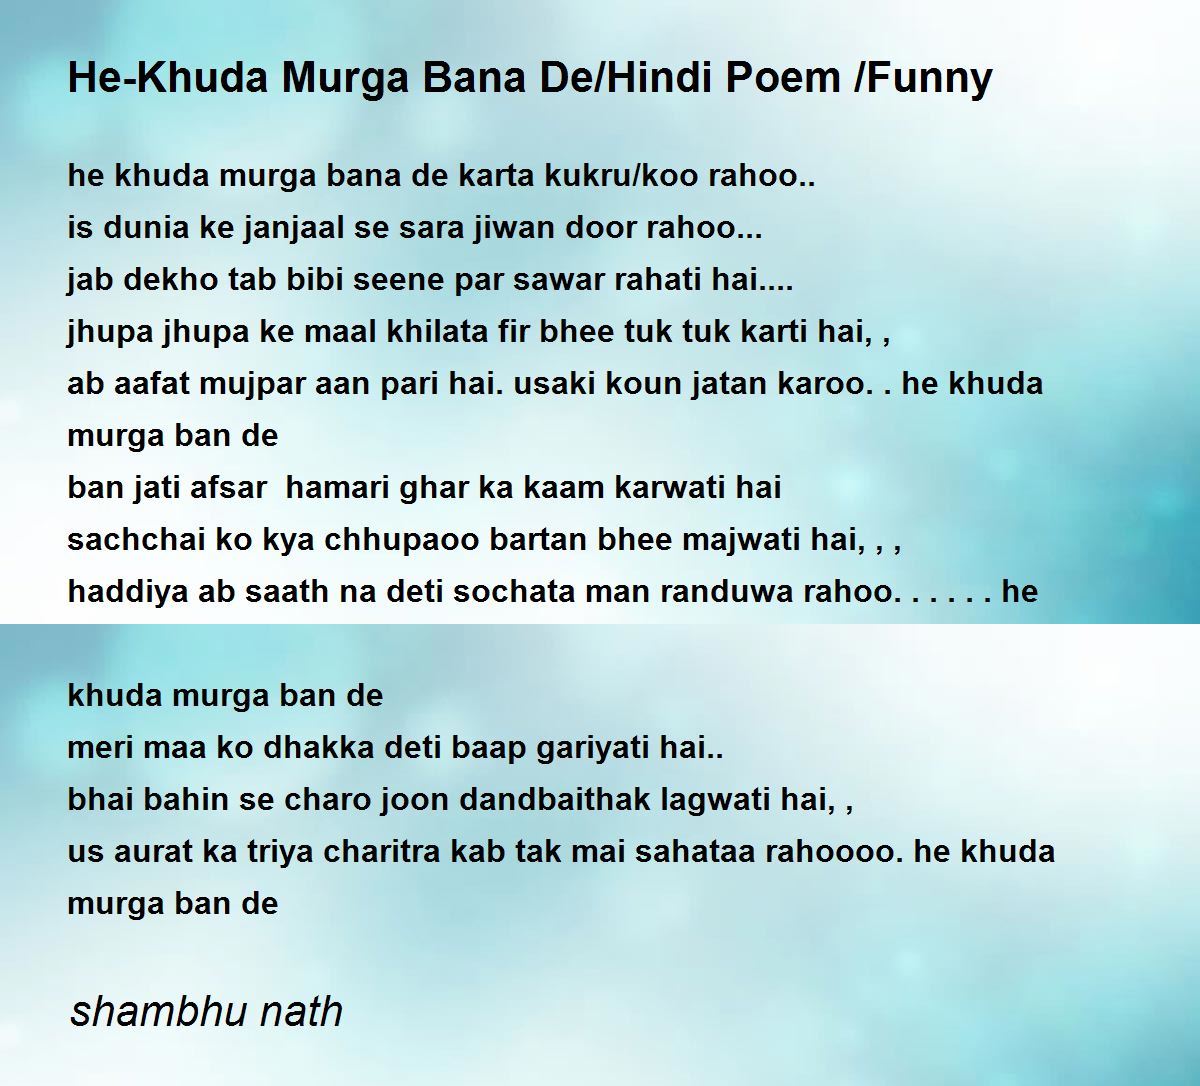 He-Khuda Murga Bana De/Hindi Poem /Funny - He-Khuda Murga Bana De/Hindi Poem  /Funny Poem by shambhu nath